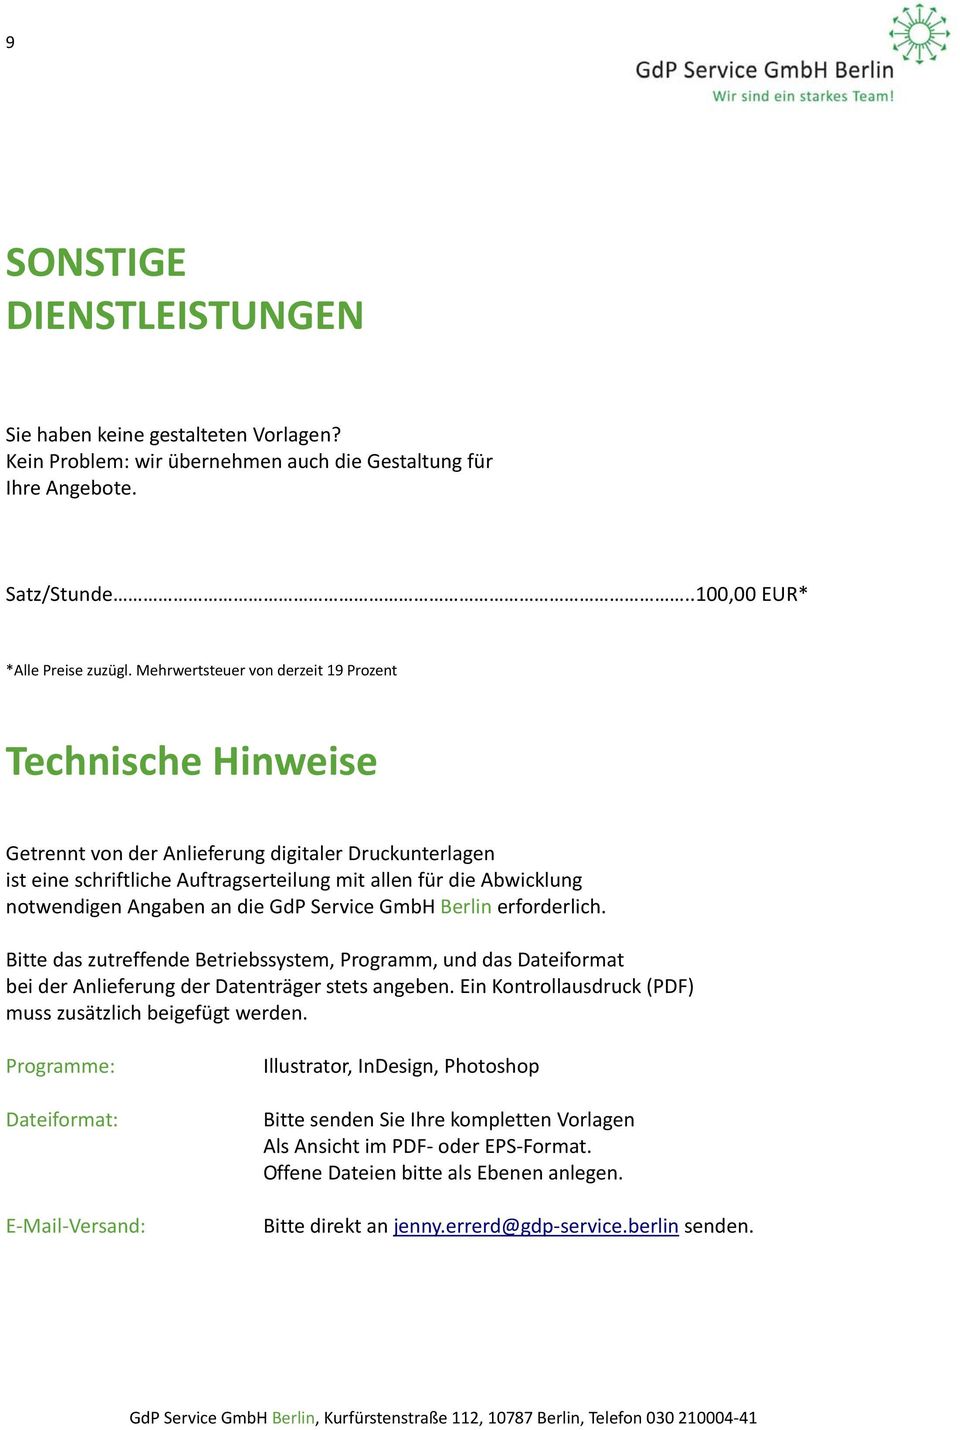 GmbH Berlin erforderlich. Bitte das zutreffende Betriebssystem, Programm, und das Dateiformat bei der Anlieferung der Datenträger stets angeben.